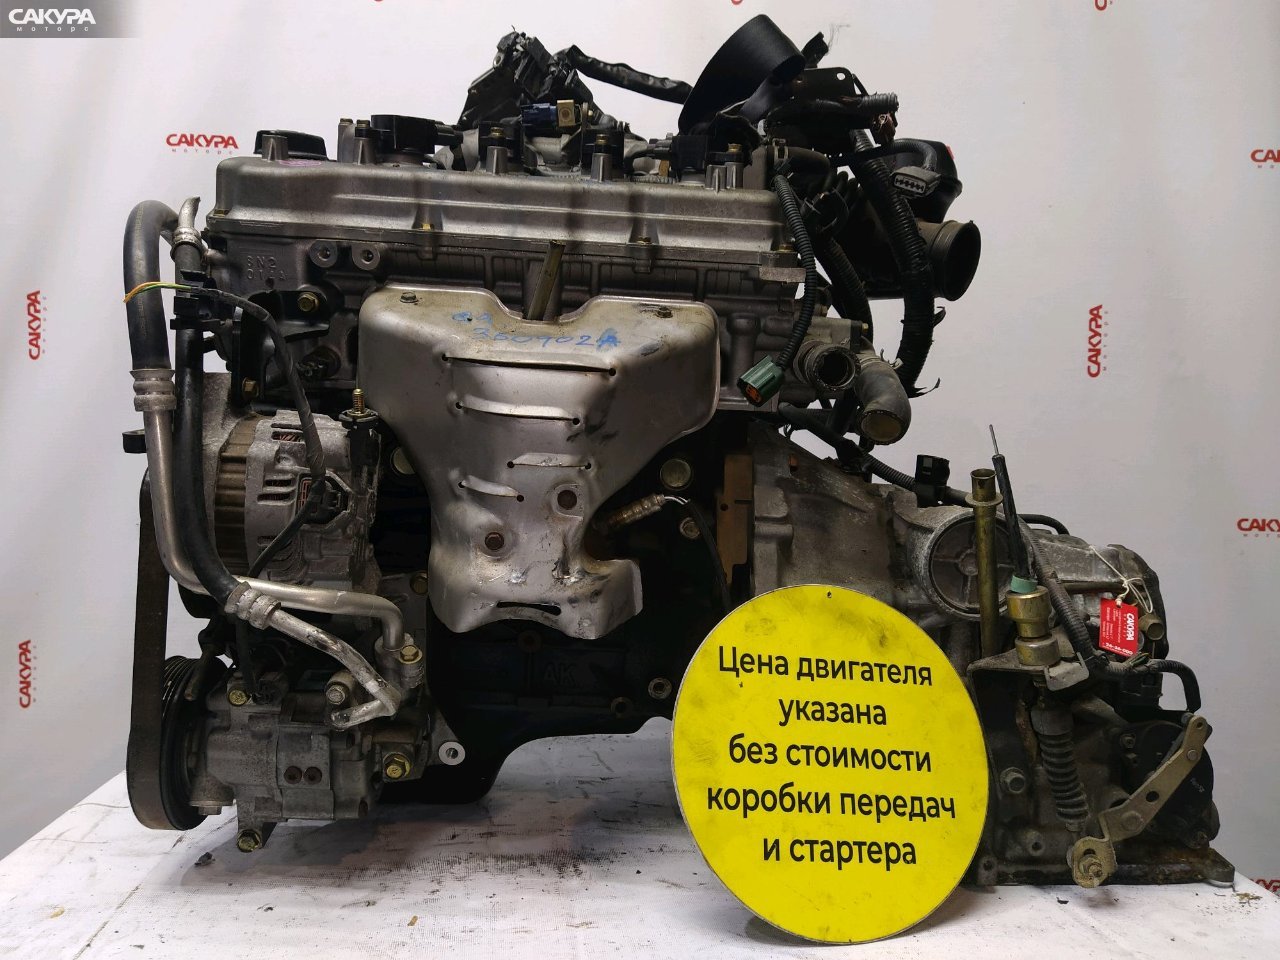 Двигатель Nissan Sunny FB15 QG15DE: купить в Сакура Красноярск.